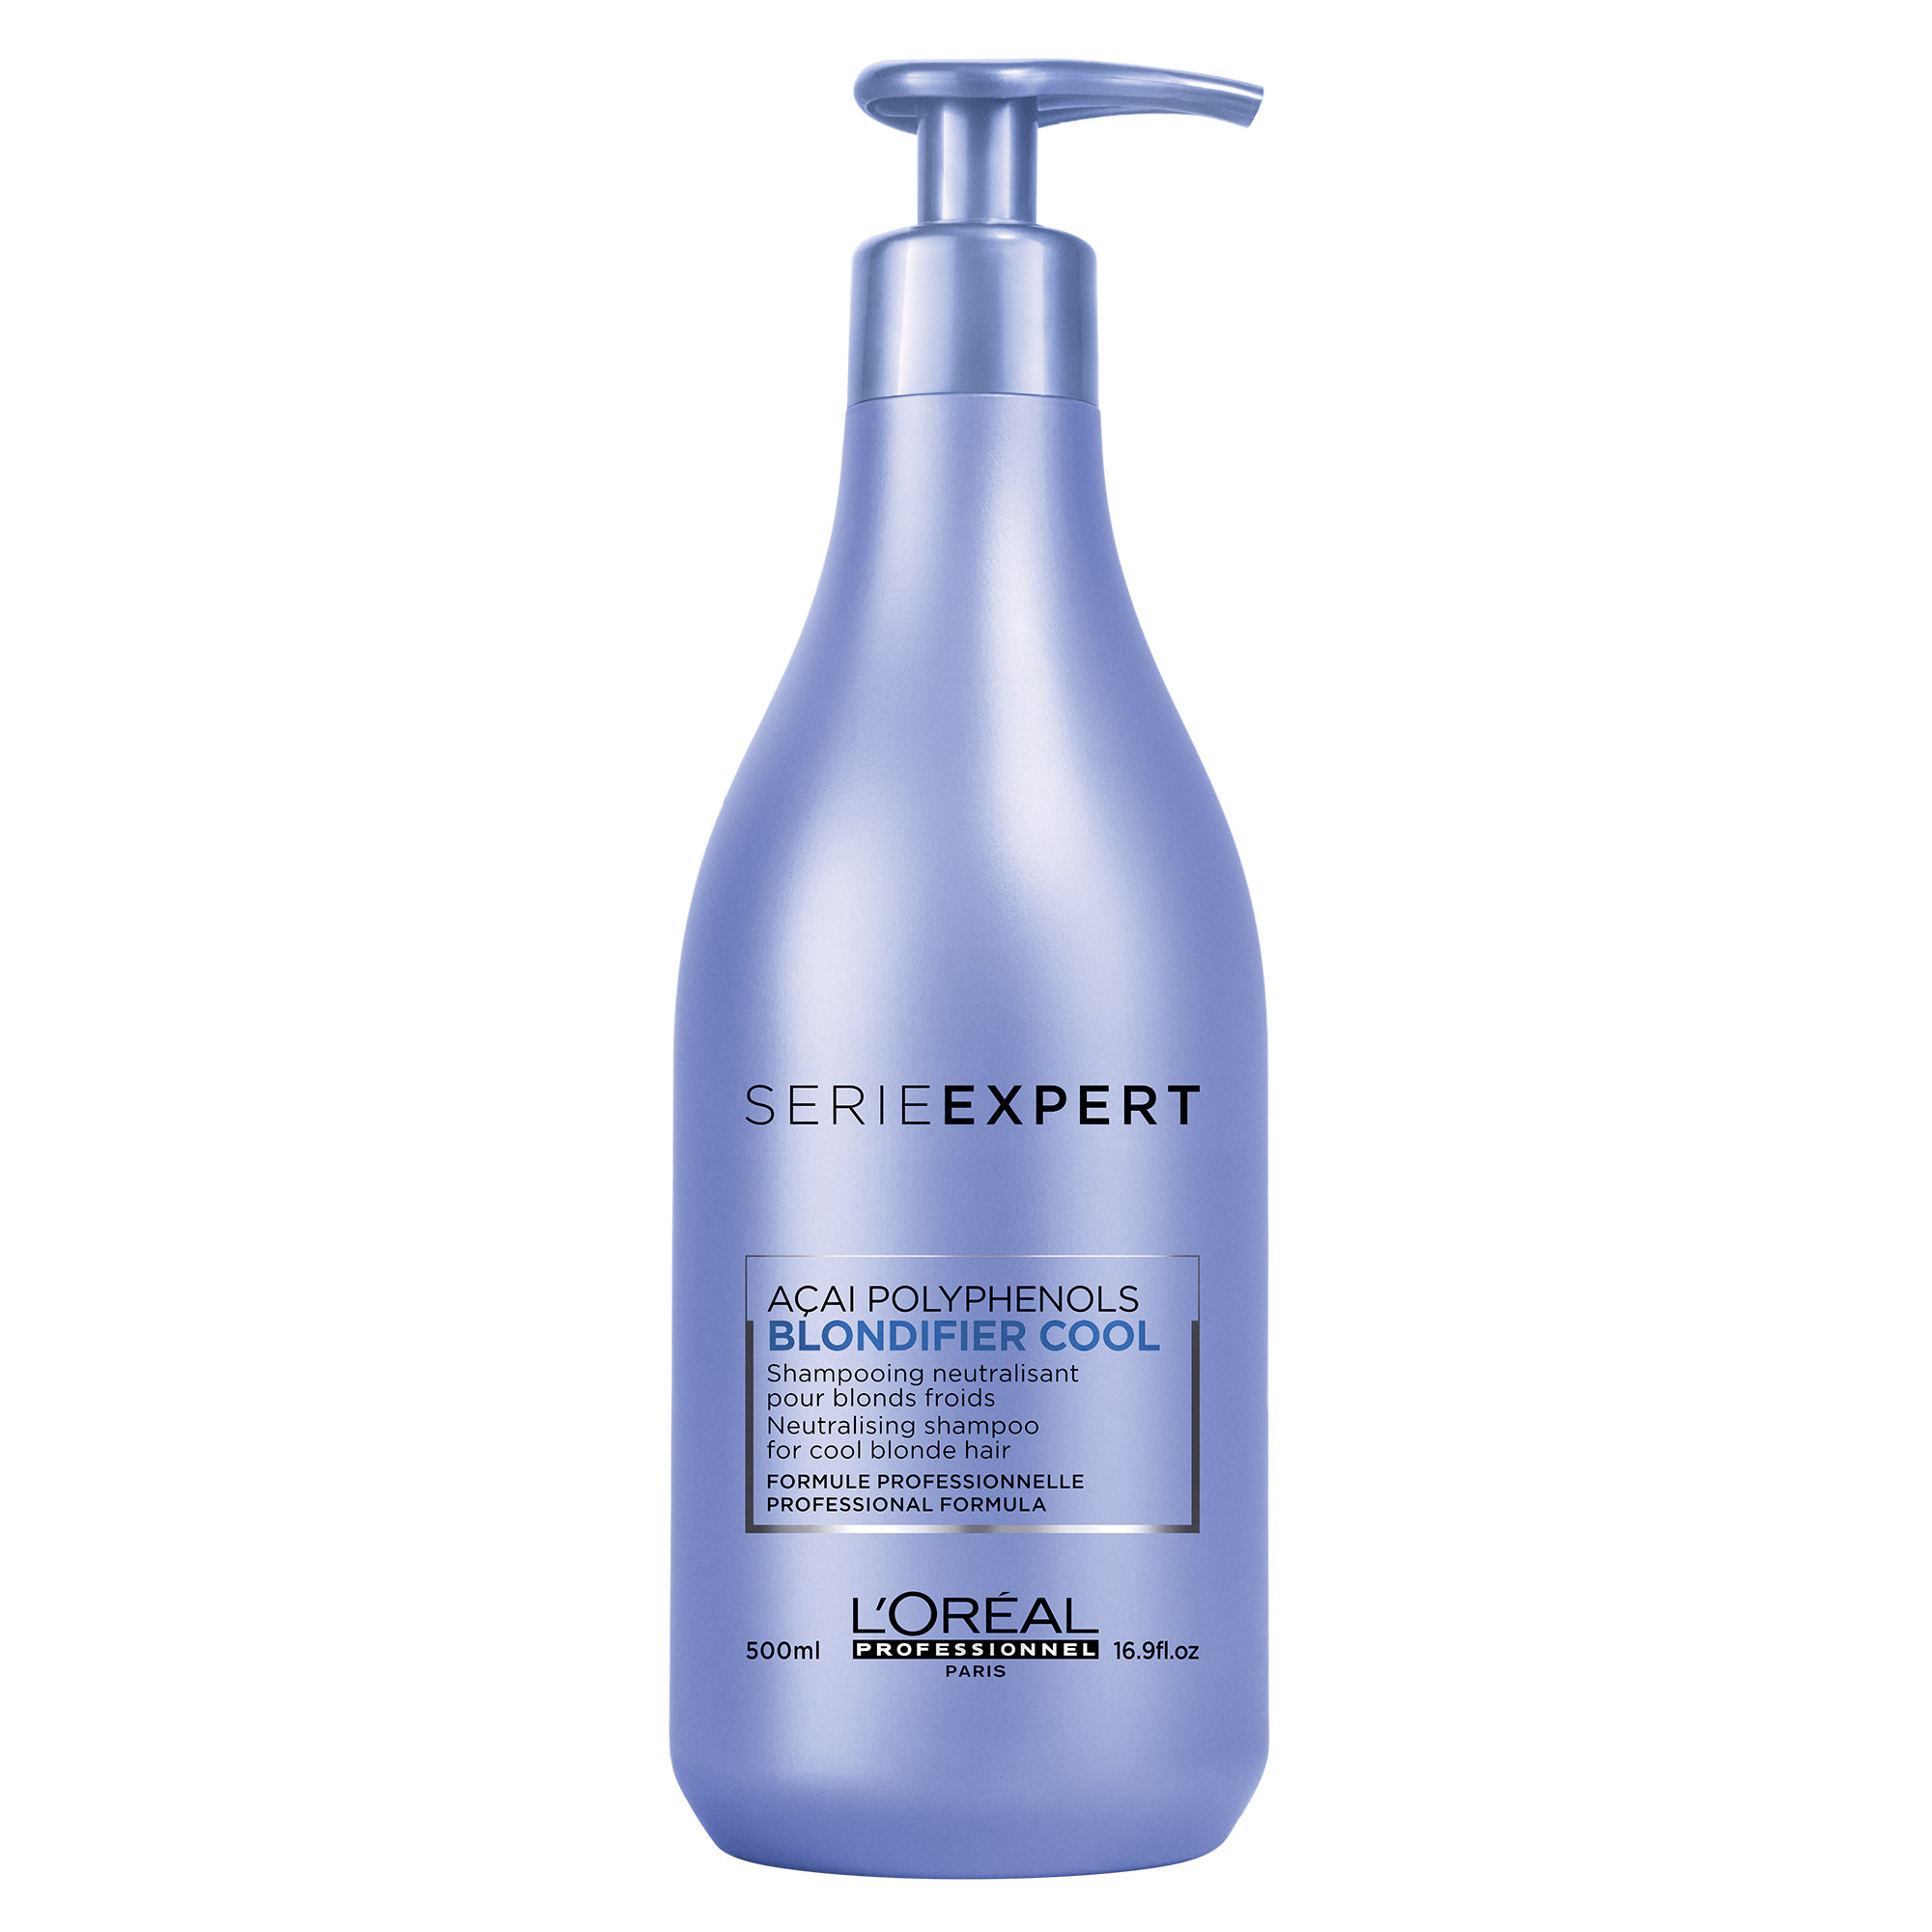 L'Oréal Professionnel LOrealProfessionnel Blondifier Shampoo Cool, 500